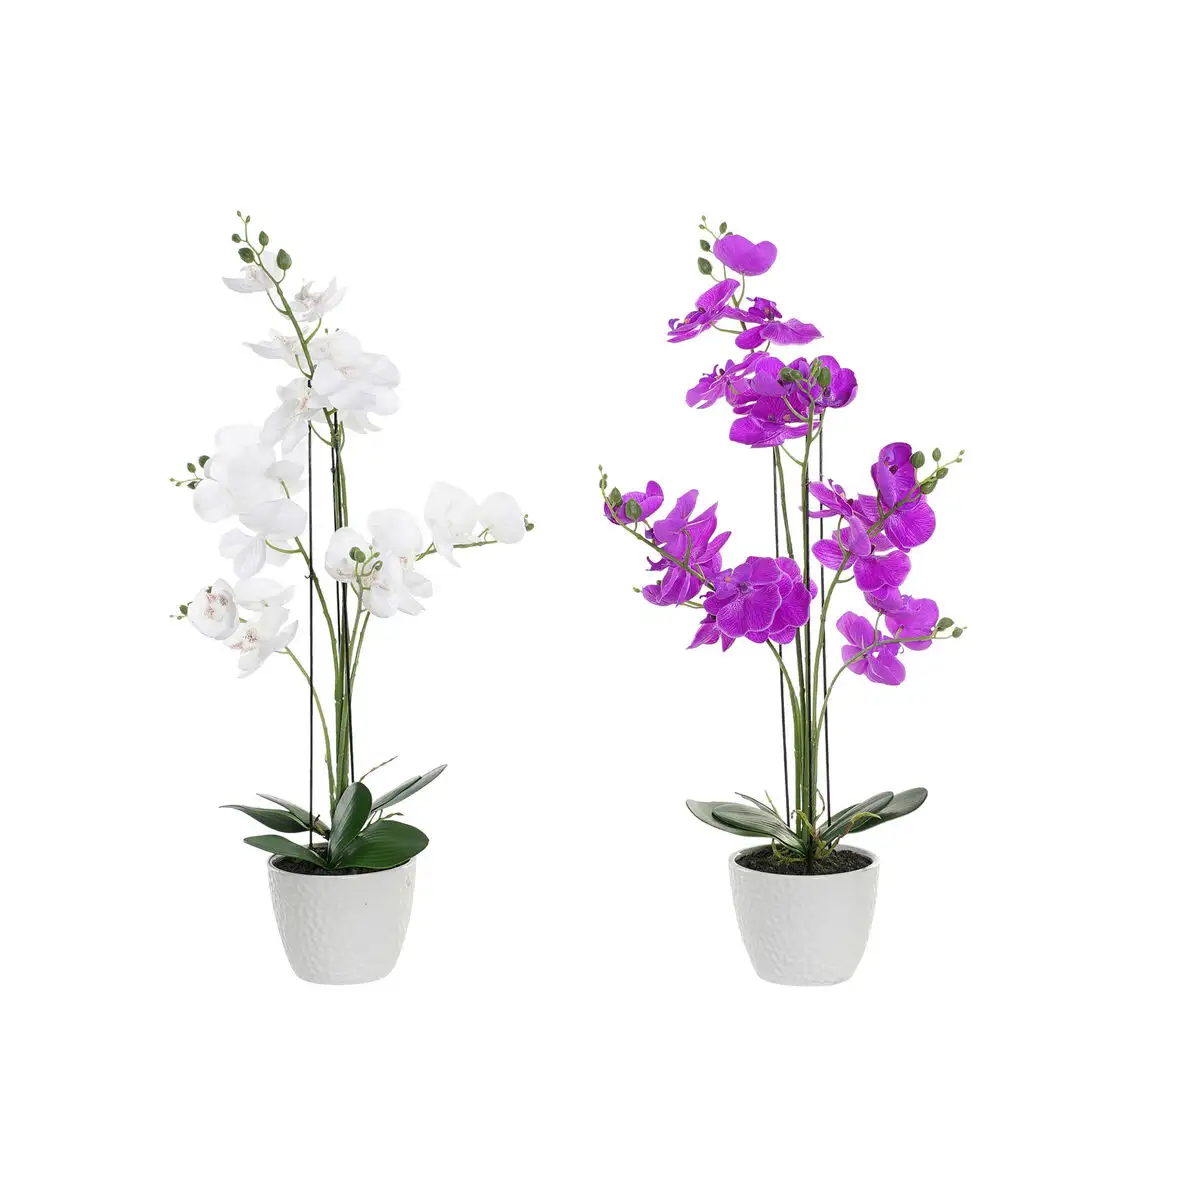 Fleurs de coratives dkd home decor 44 x 27 x 77 cm lilas blanc orchide e verte 2 unite s_3368. DIAYTAR SENEGAL - Votre Destination Shopping Éthique. Parcourez notre gamme et choisissez des articles qui respectent l'environnement et les communautés locales.